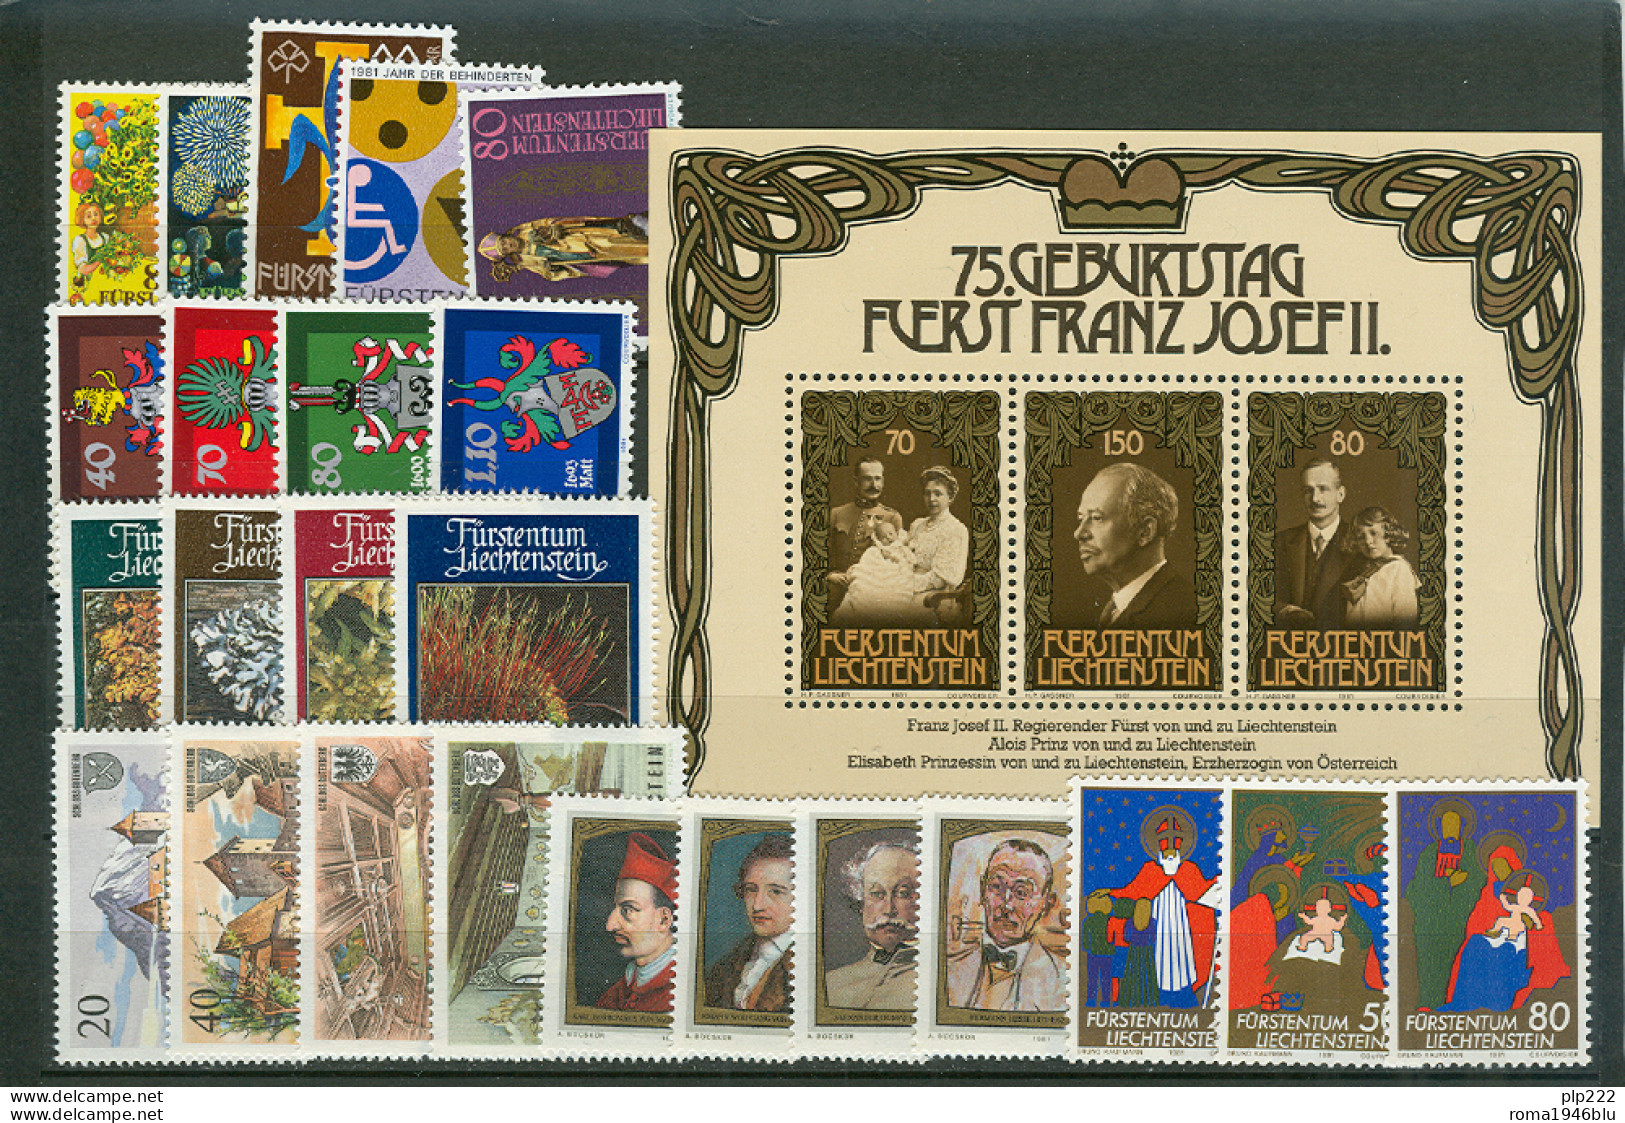 Liechtenstein 1981 Annata Completa / Complete Year Set **/MNH VF - Annate Complete